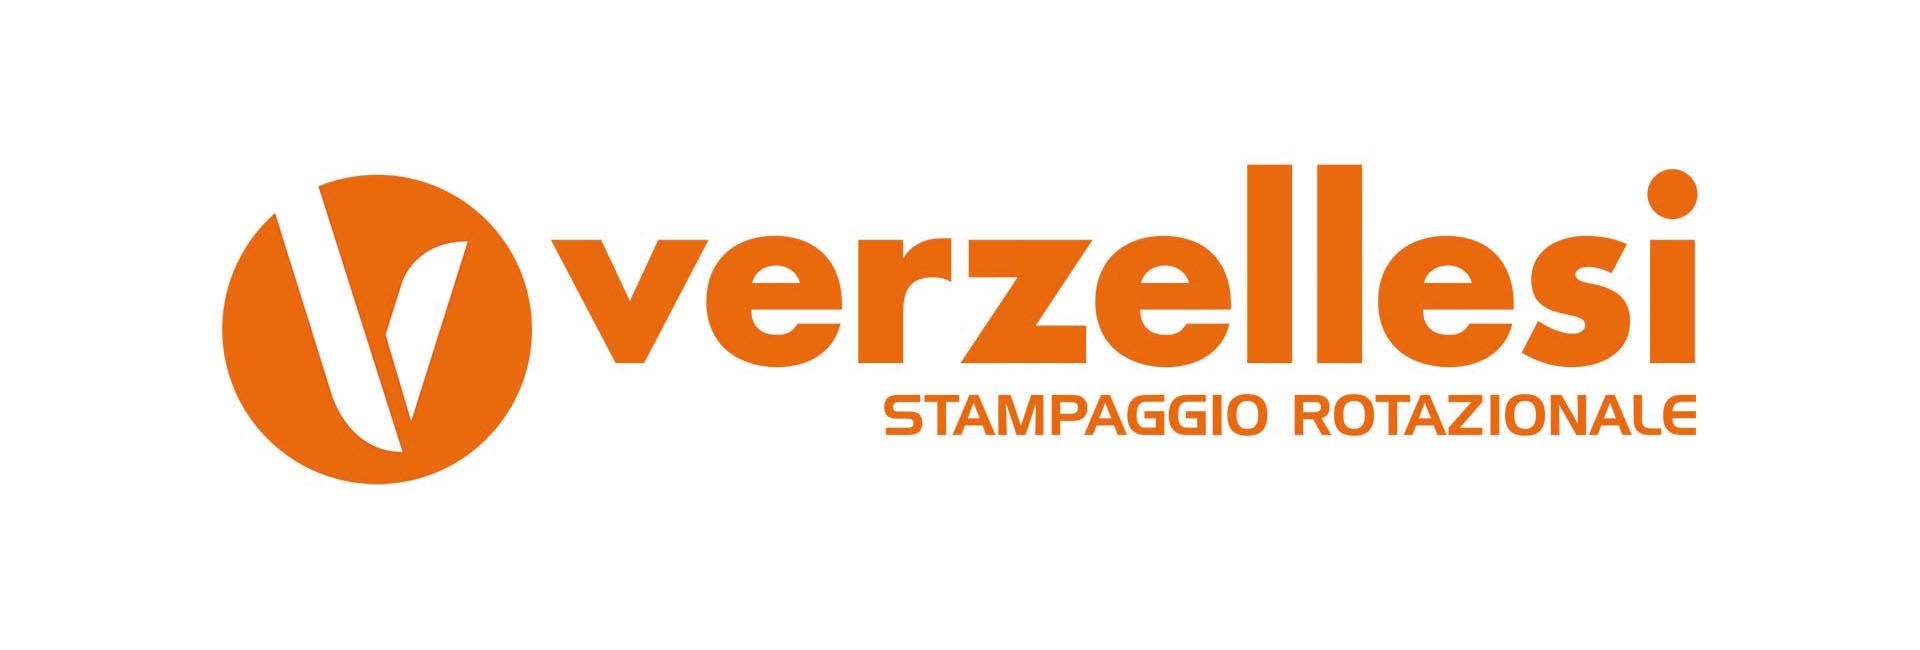 Verzellesi - Rotomoldeo depósitos sprayers y accessorios por agricoltura y industria